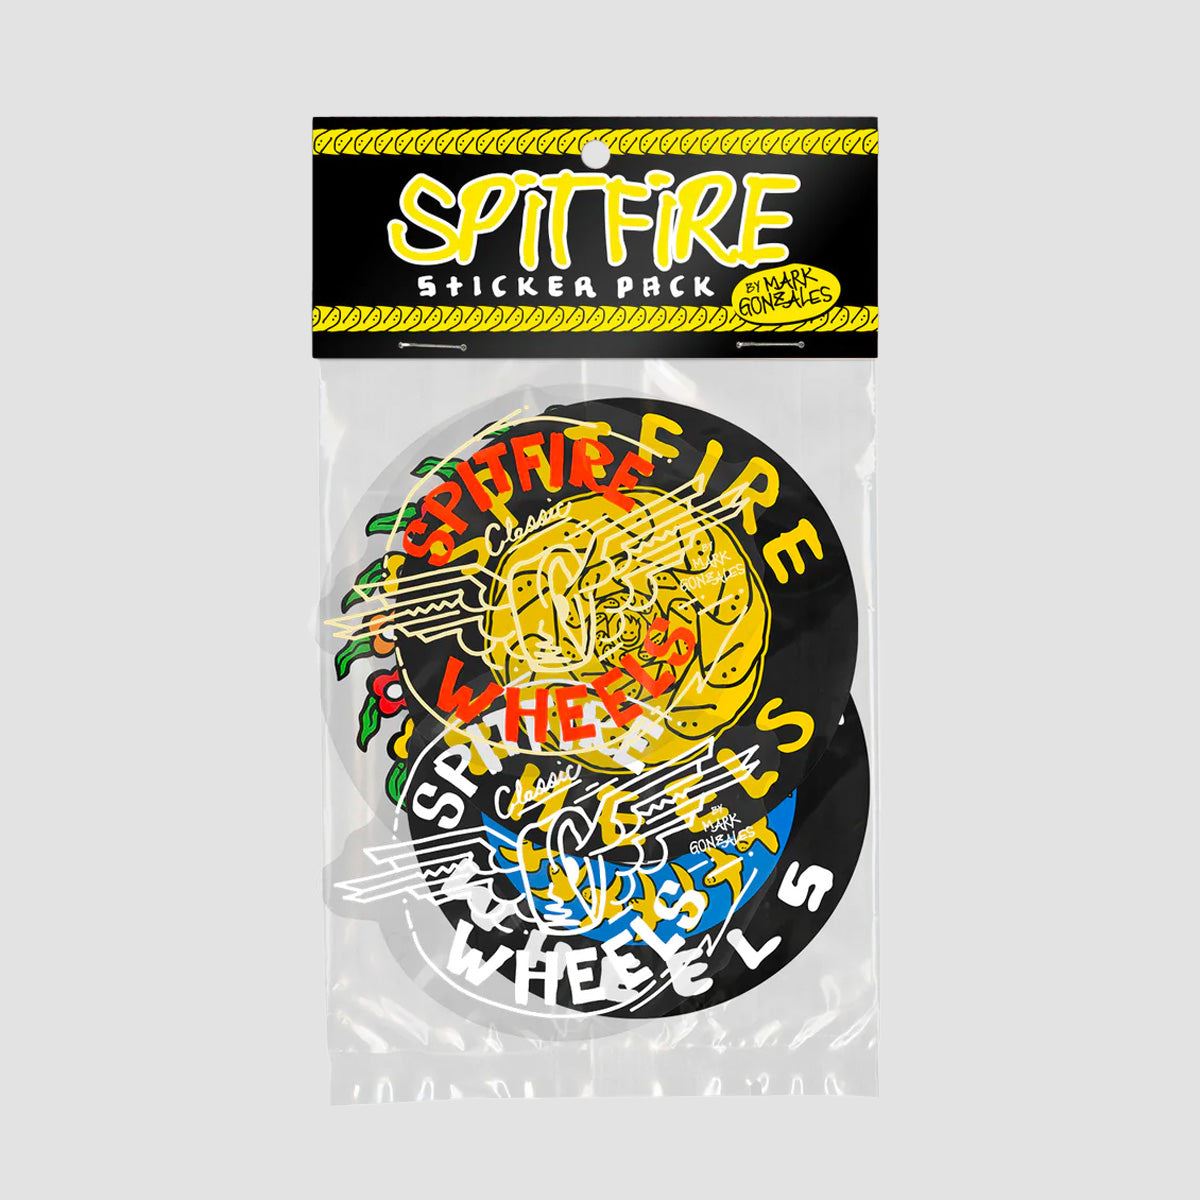 Spitfire Mark Gonzales Sticker Pack